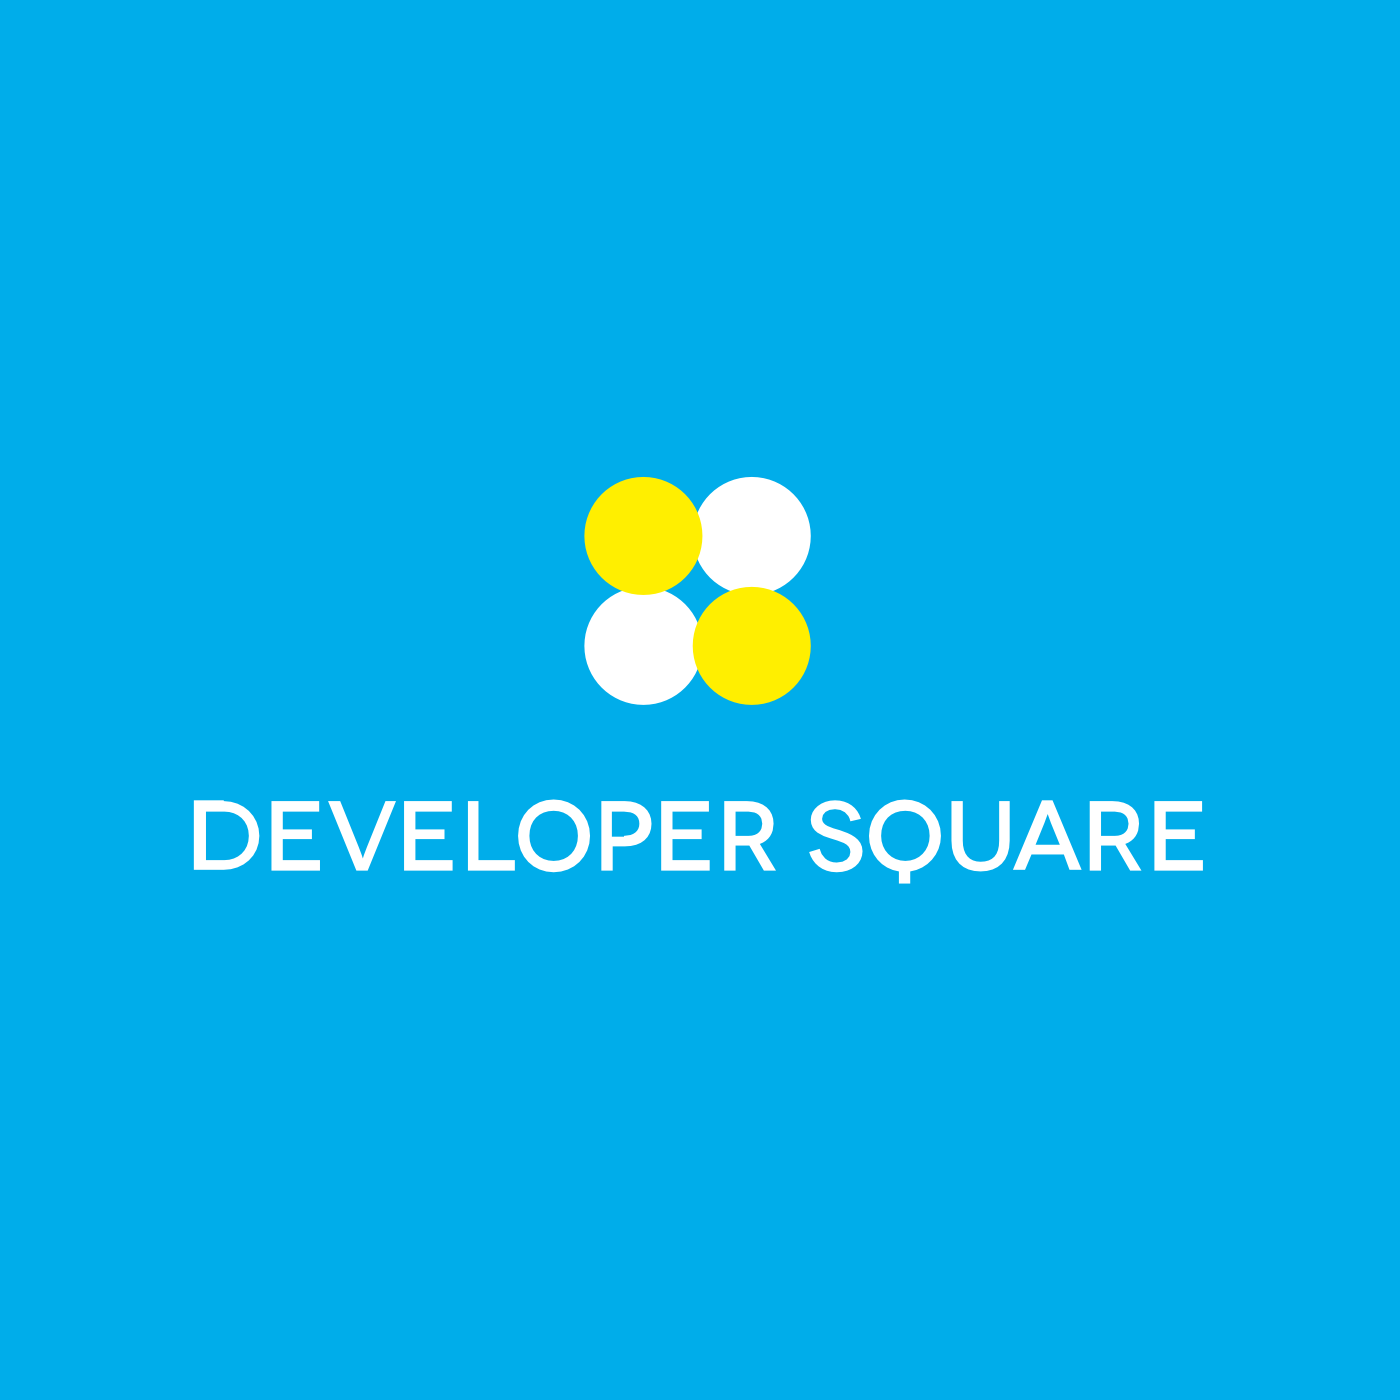 Developer Square